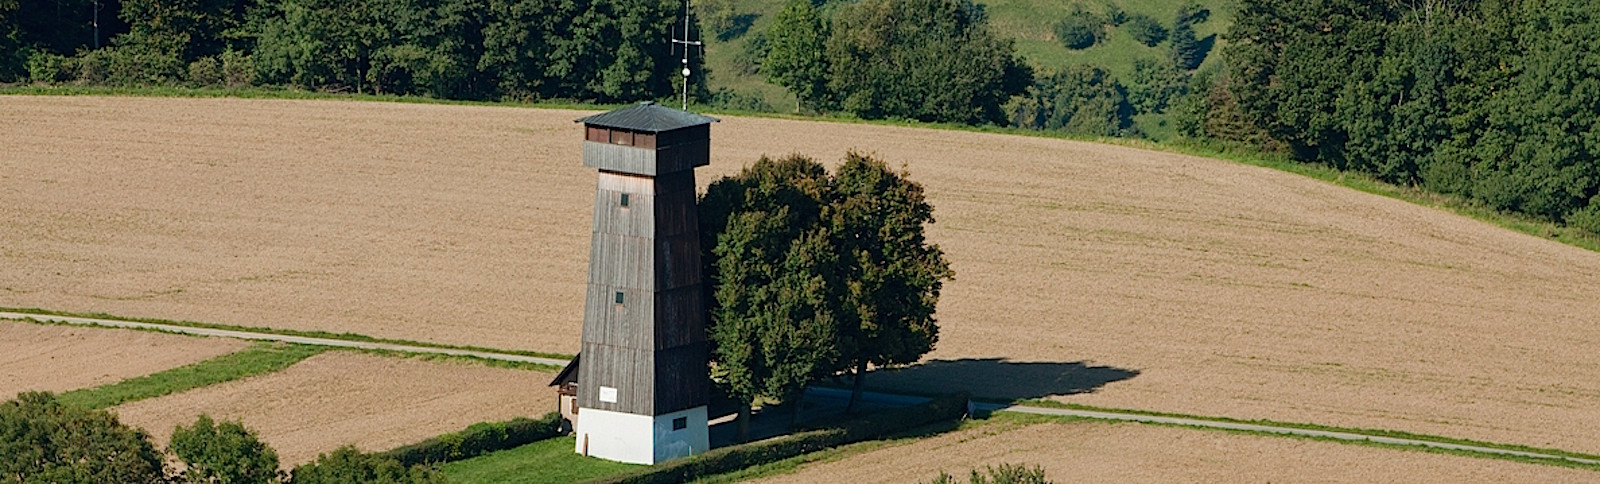 Juxkopfturm Spiegelberg